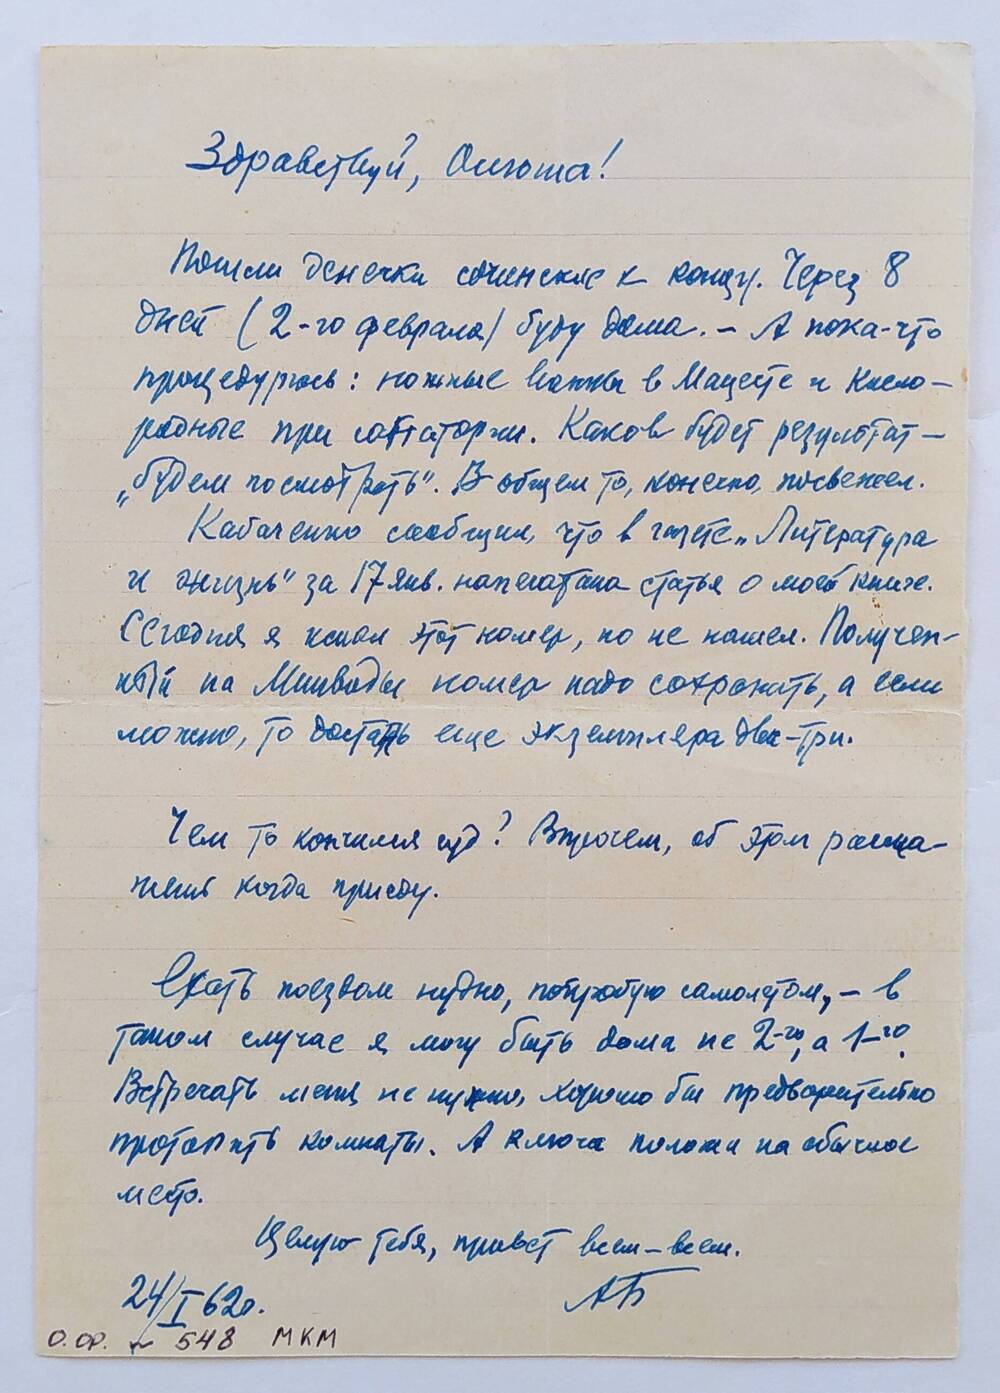 Письмо Ольге Бауэр от отца, датировано 24/I.62 г.,  написано на тетрадном листе в линию, чернильной ручкой синего цвета.